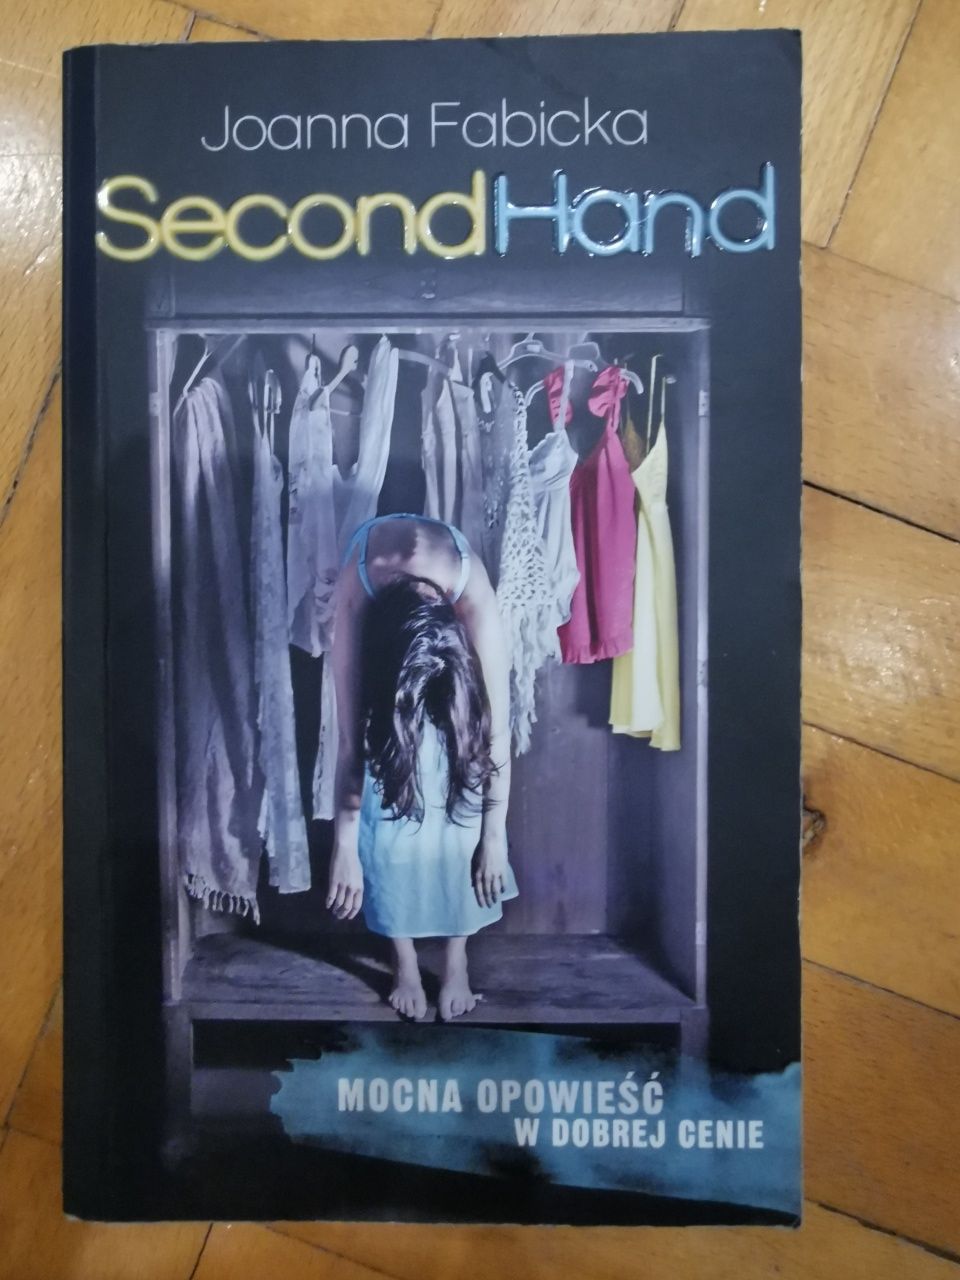 Książka J.Fabicka "Second Hand"